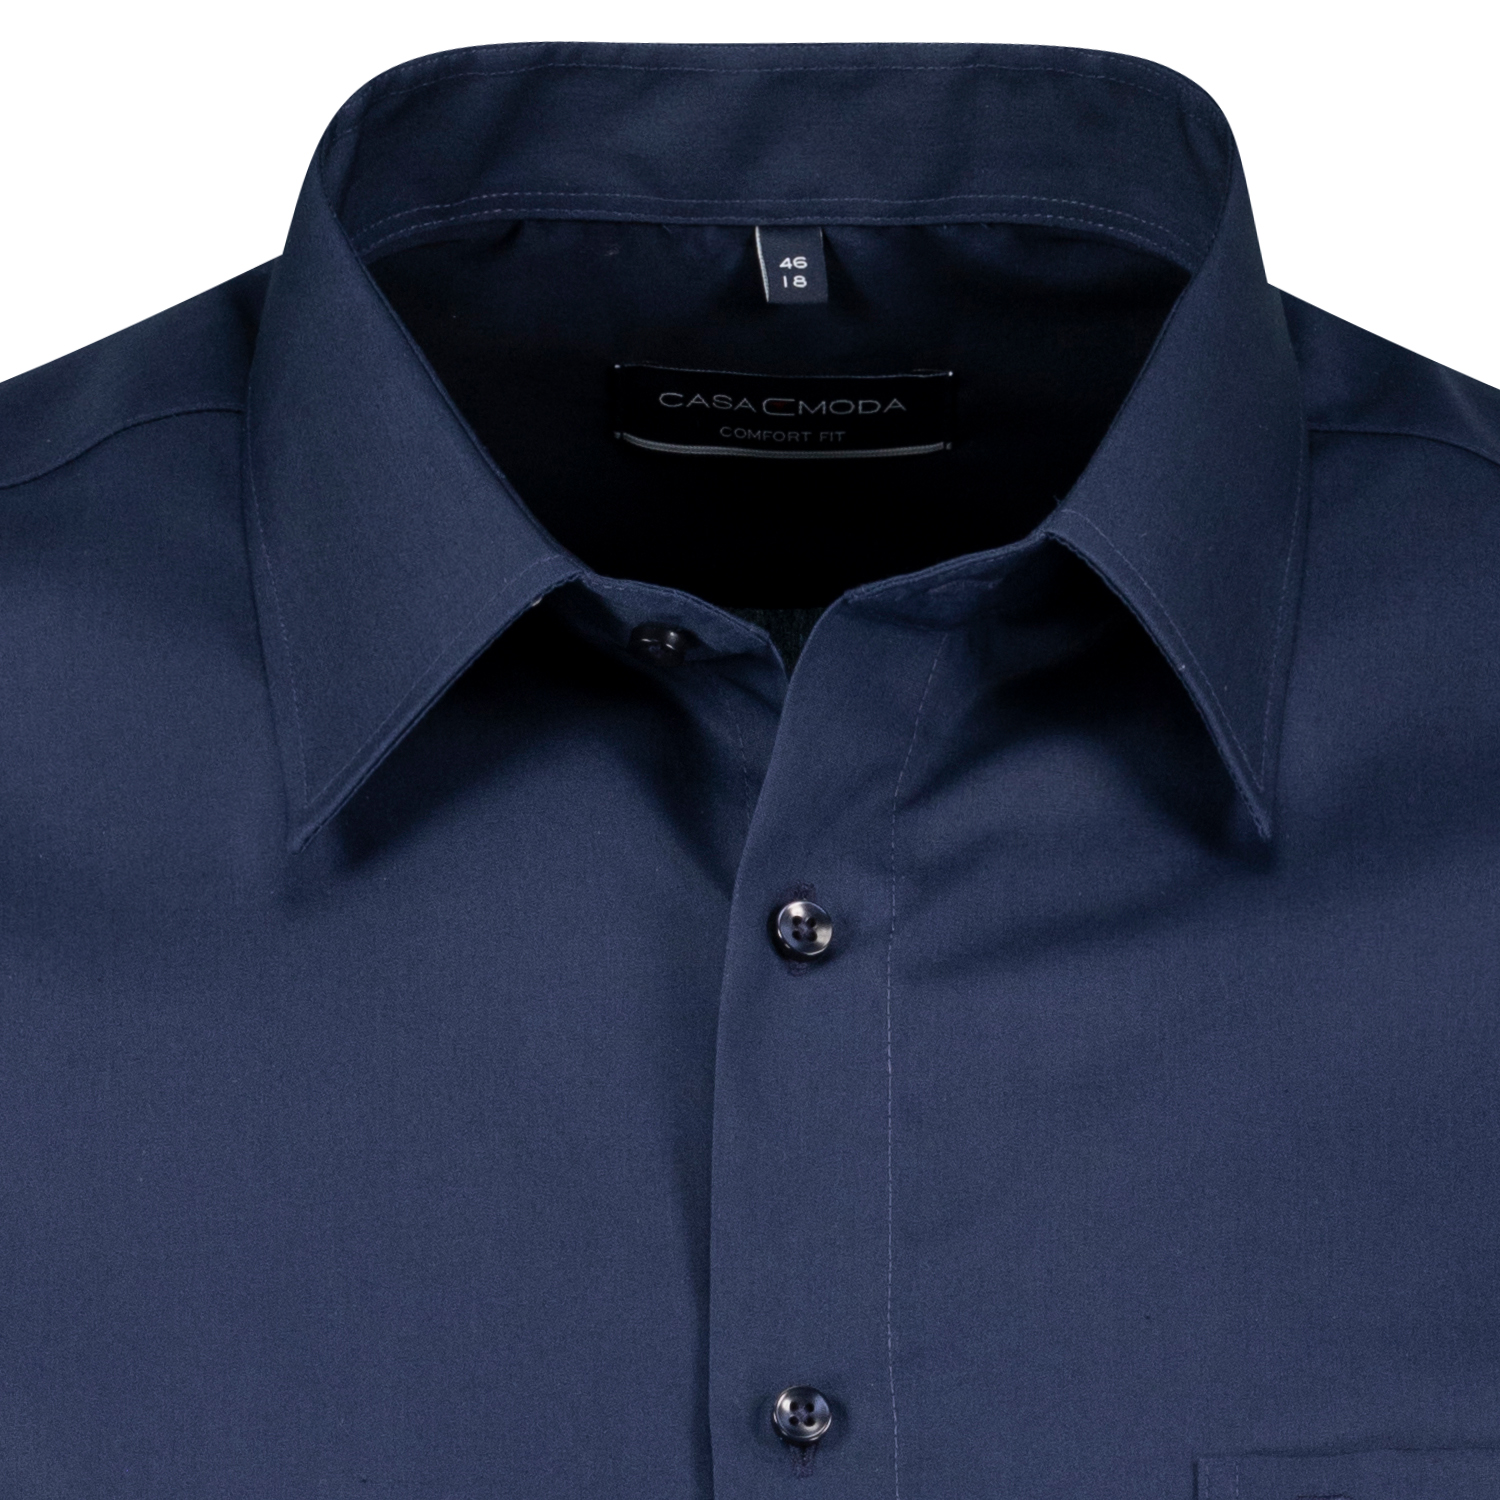 Kurzärmliges Herren Hemd in dunkelblau von CASAMODA bügelfrei in Übergrößen bis 7XL